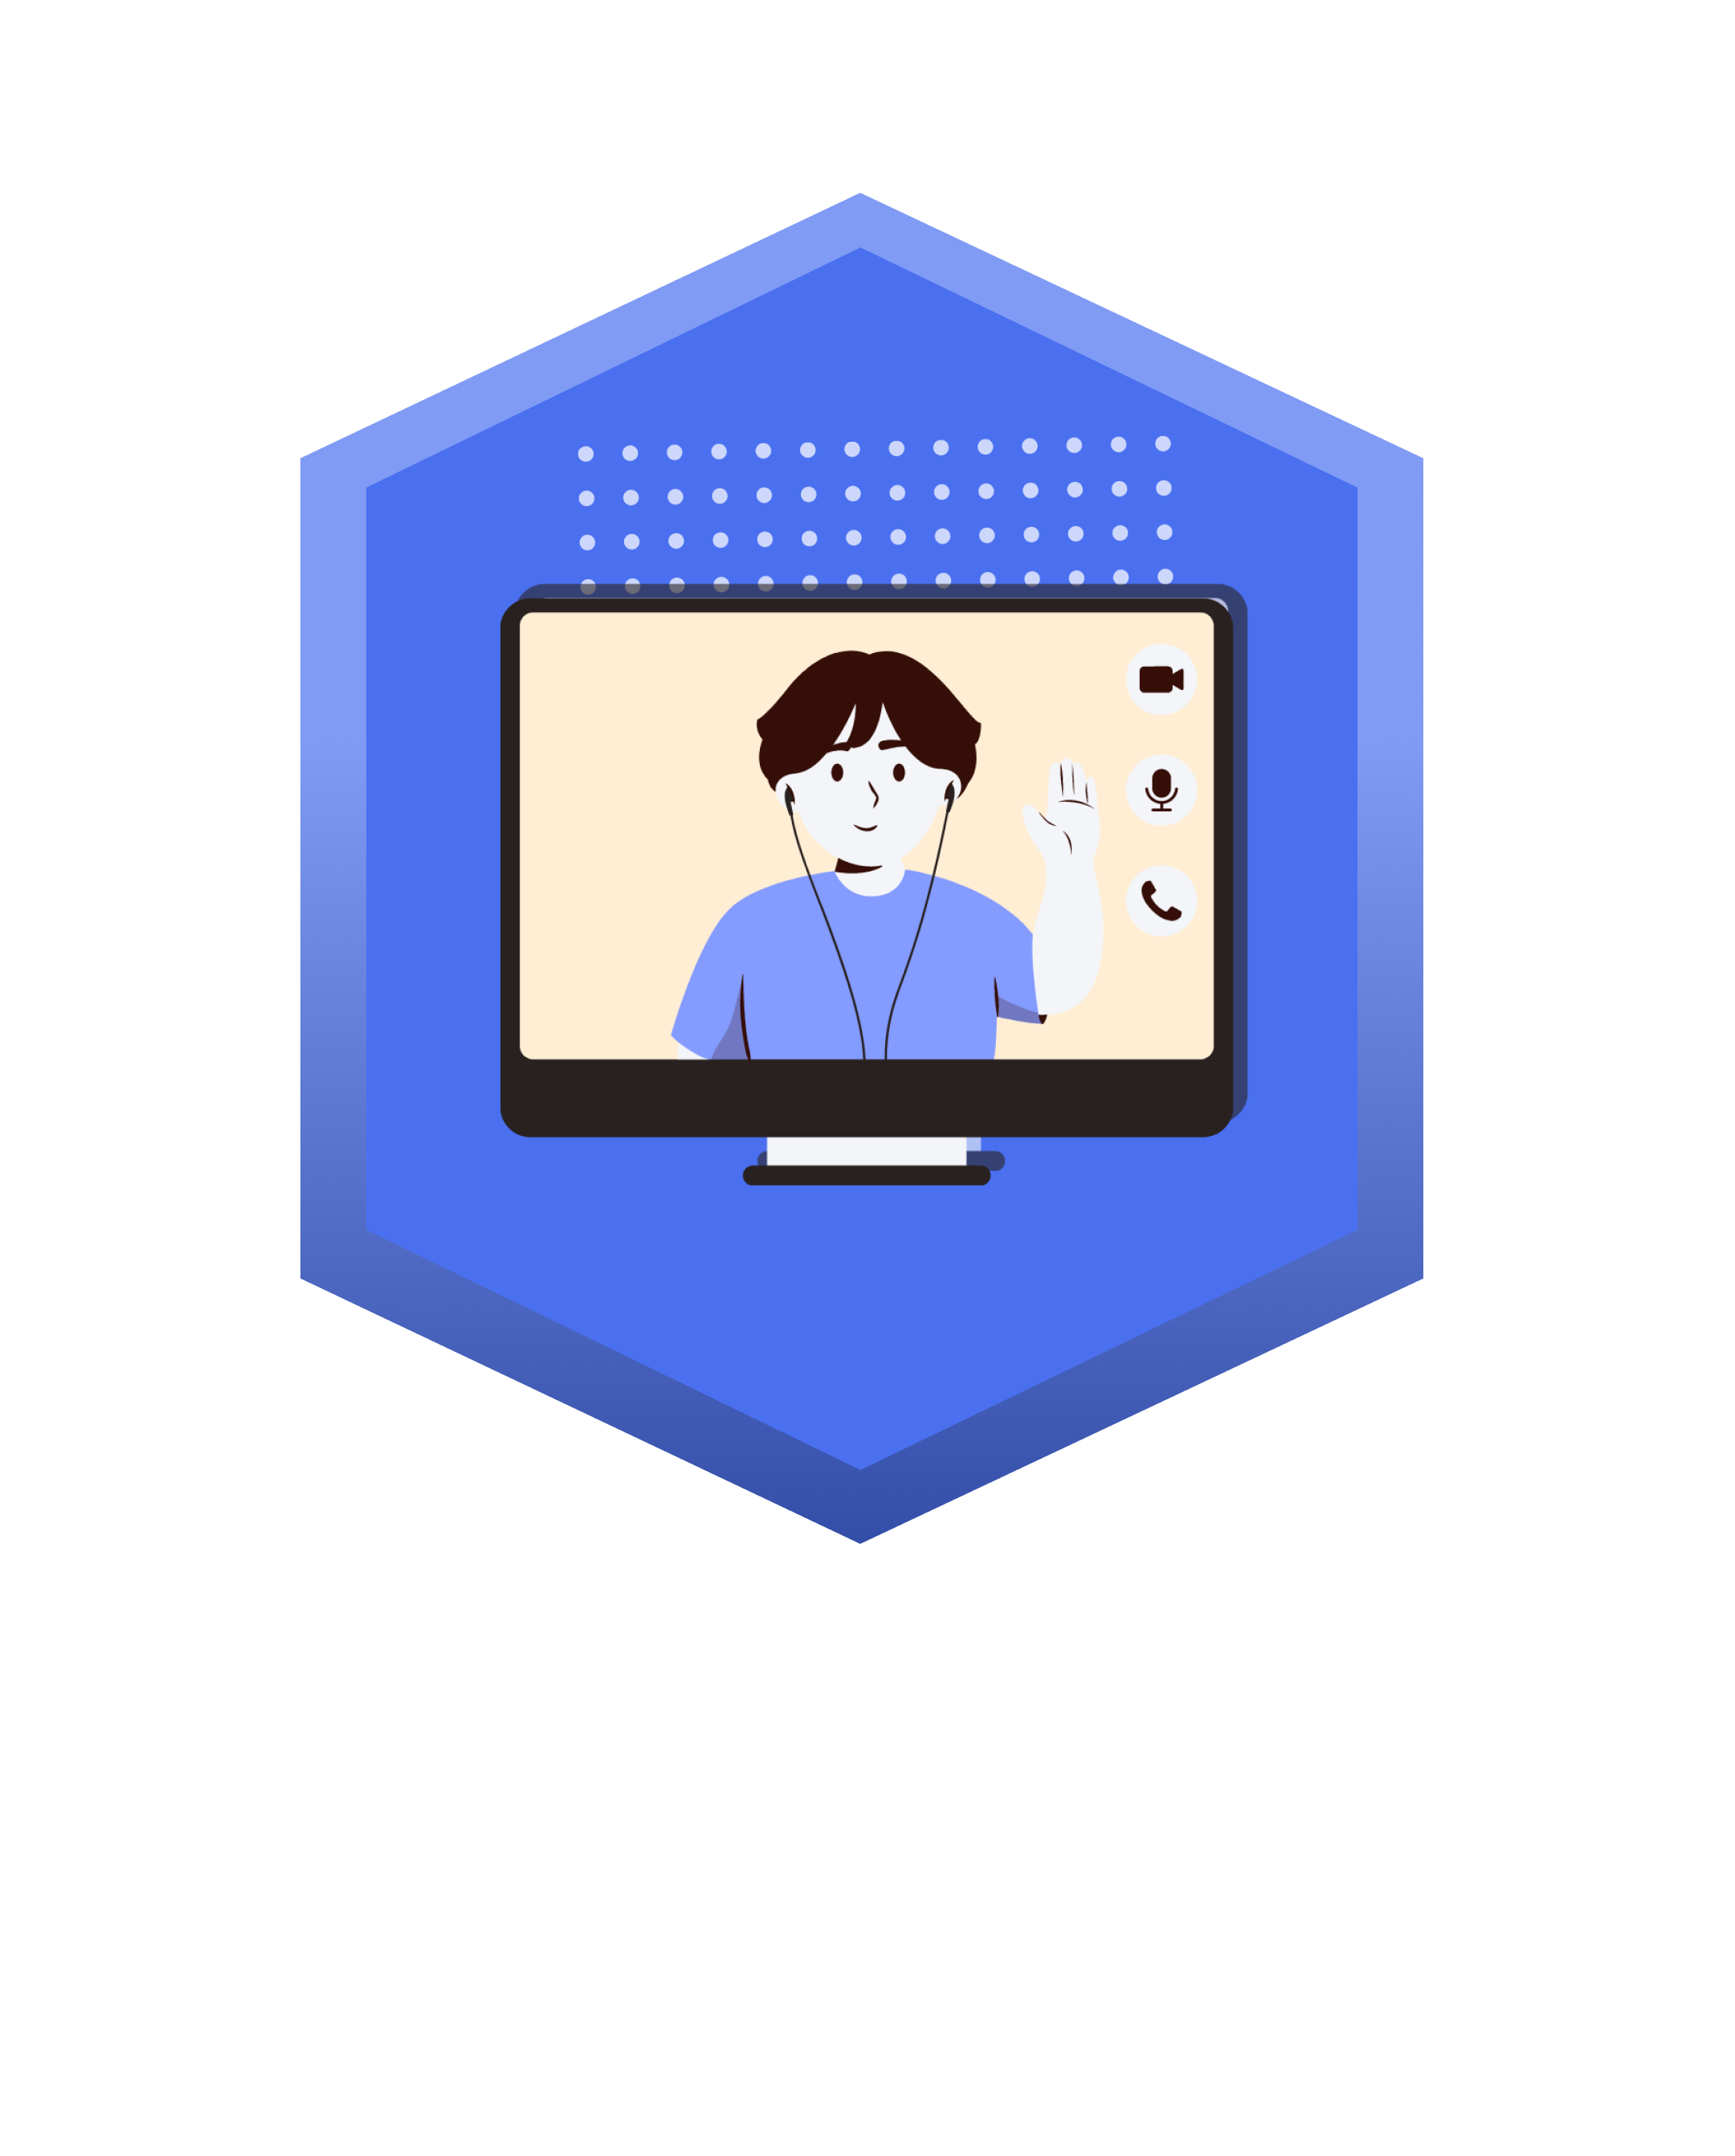 Pembelajaran akan dinamis karena dilakukan secara live online. Dengan total durasi 5 jam pertemuan kamu bisa bertanya banyak hal secara langsung dengan mentor yang berpengalaman